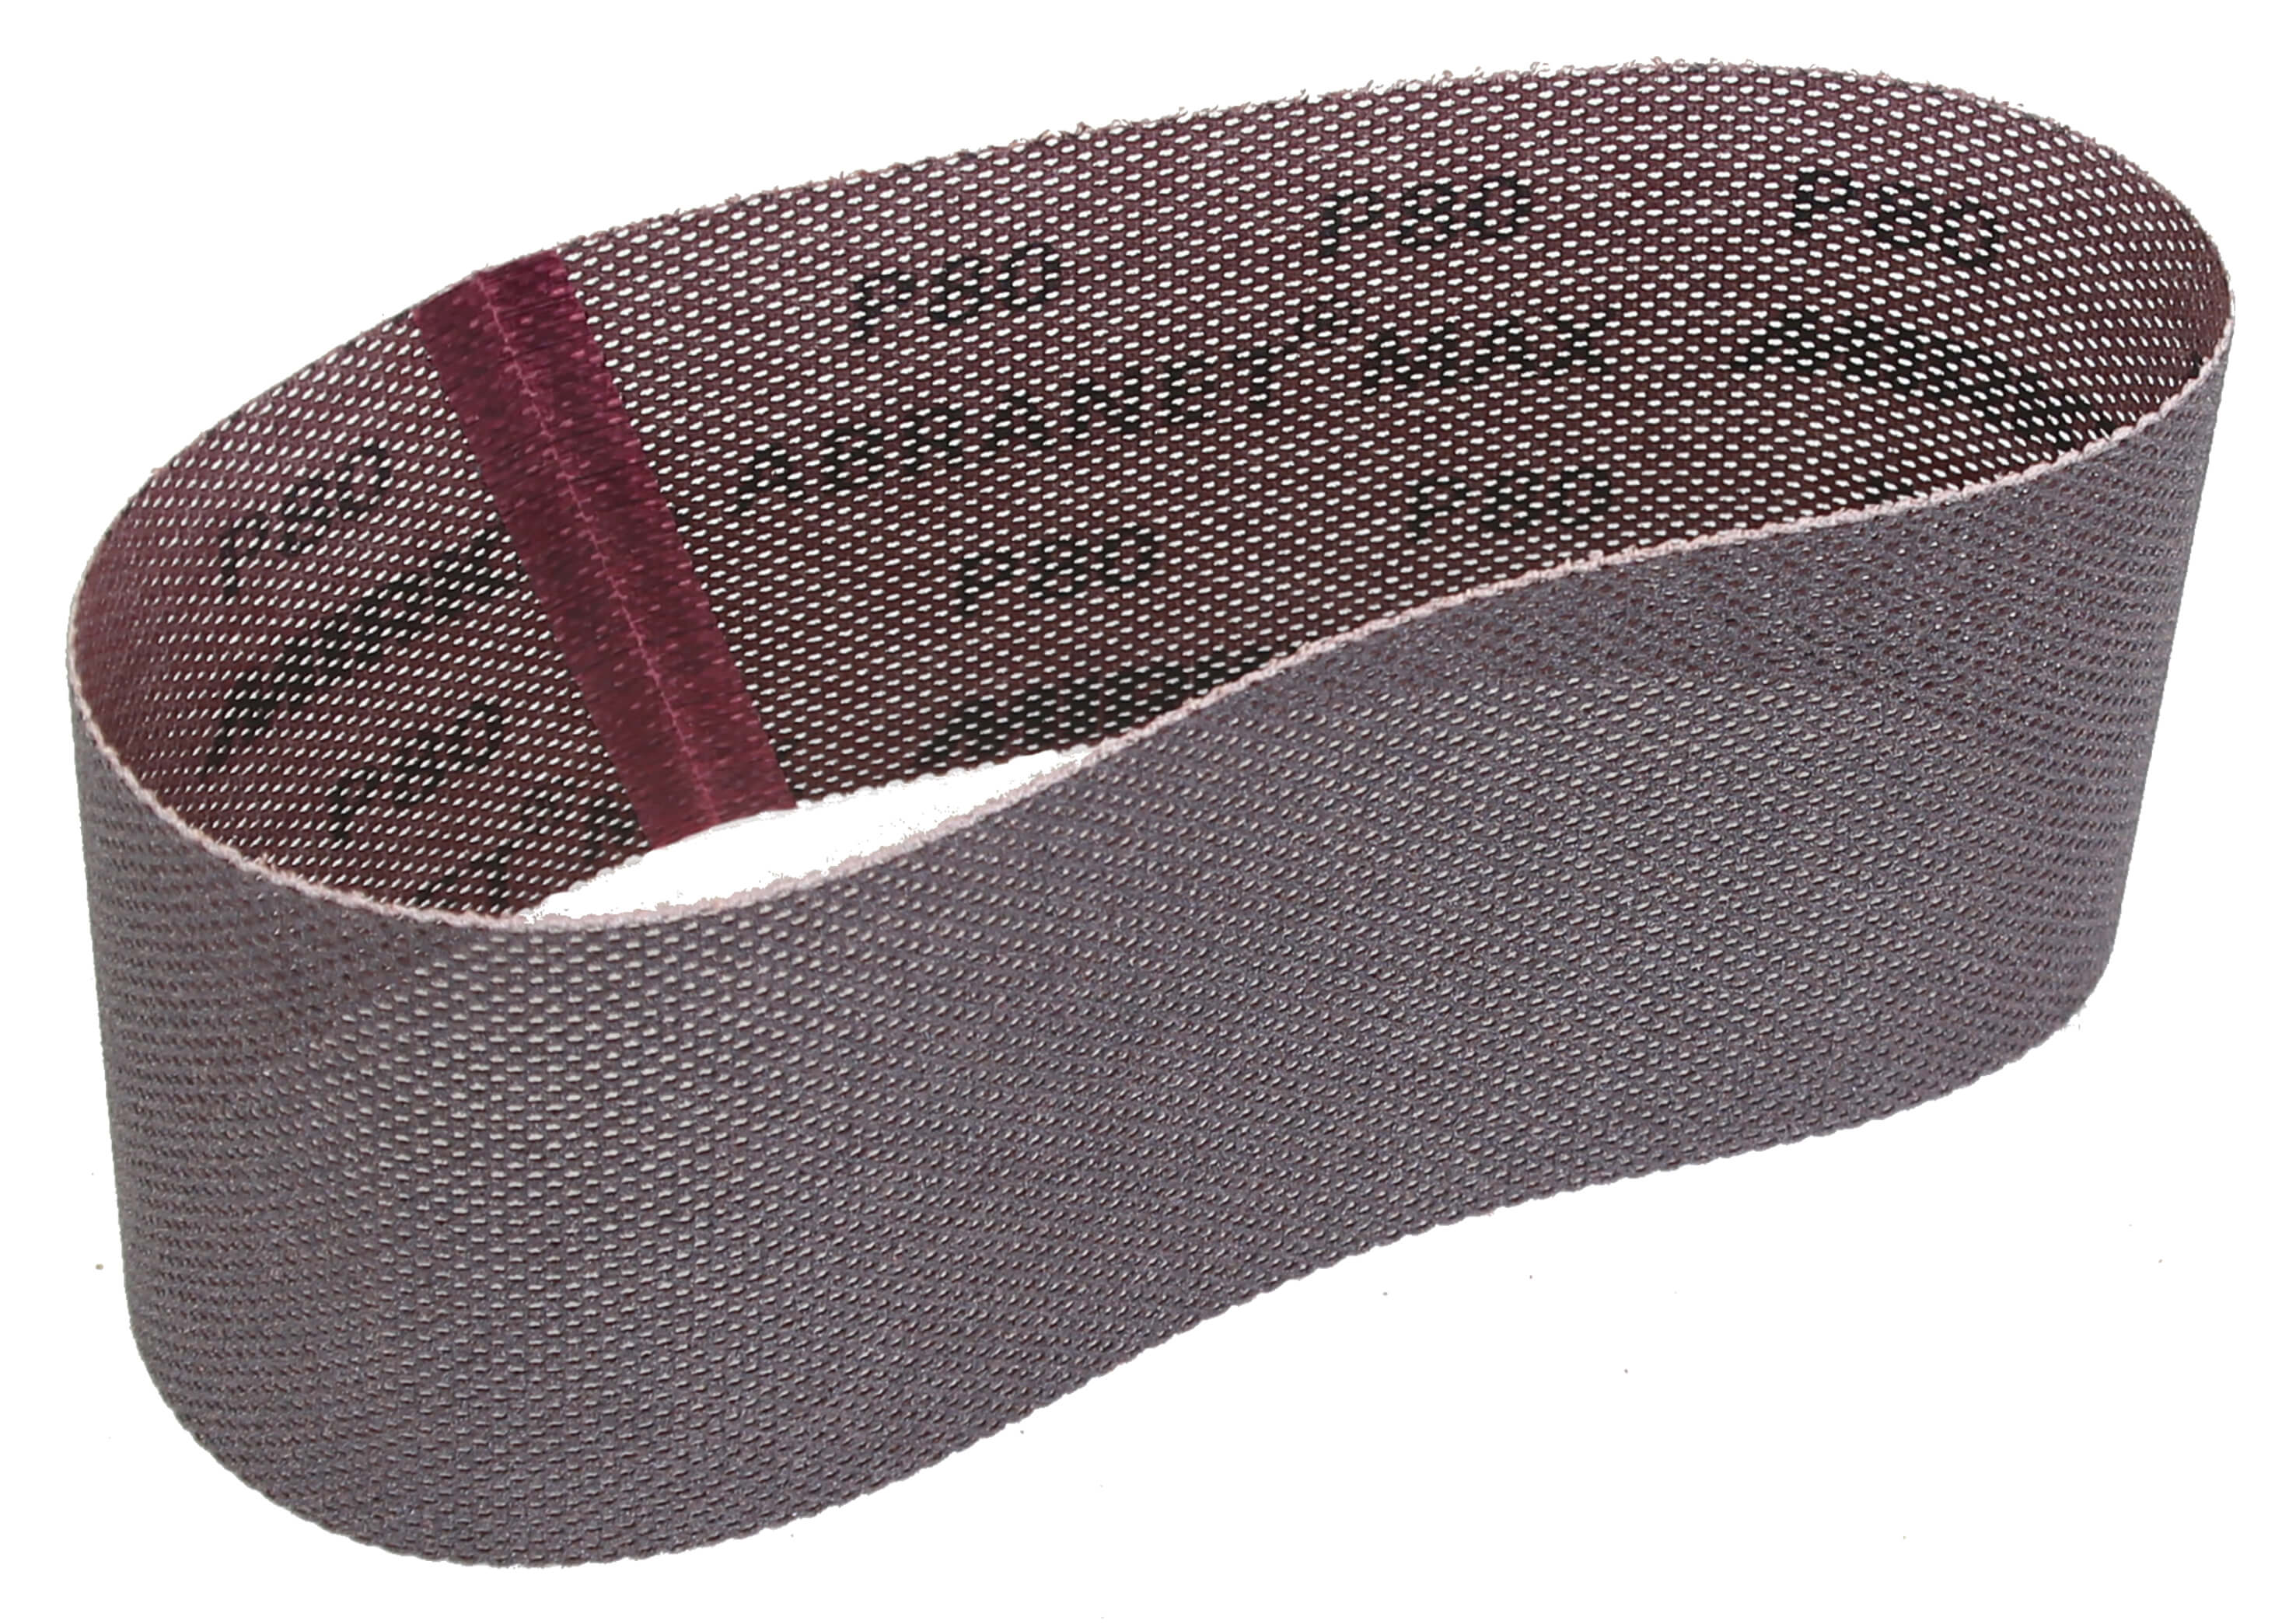 Mirka Abranet Max 3" x 24" x 120gr Sanding Belt